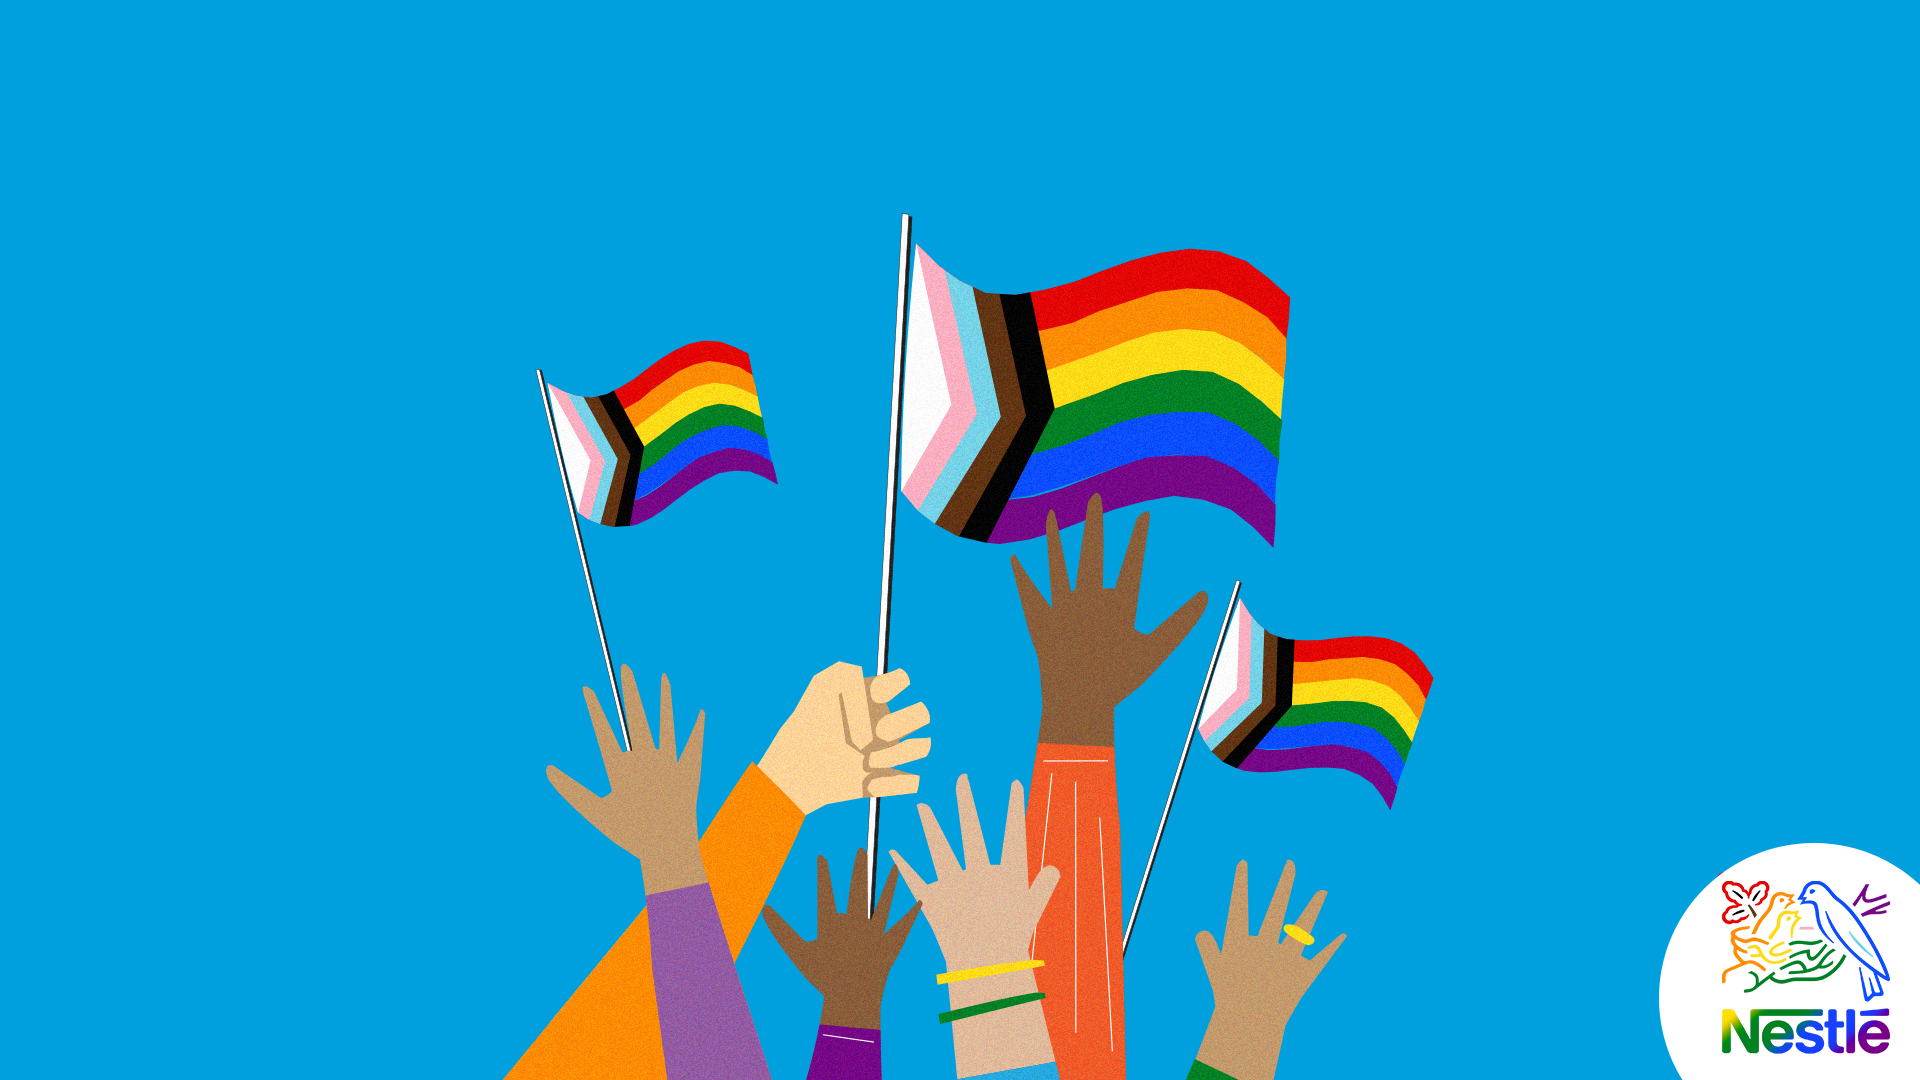 Illustration of hands holding up a Pride flag